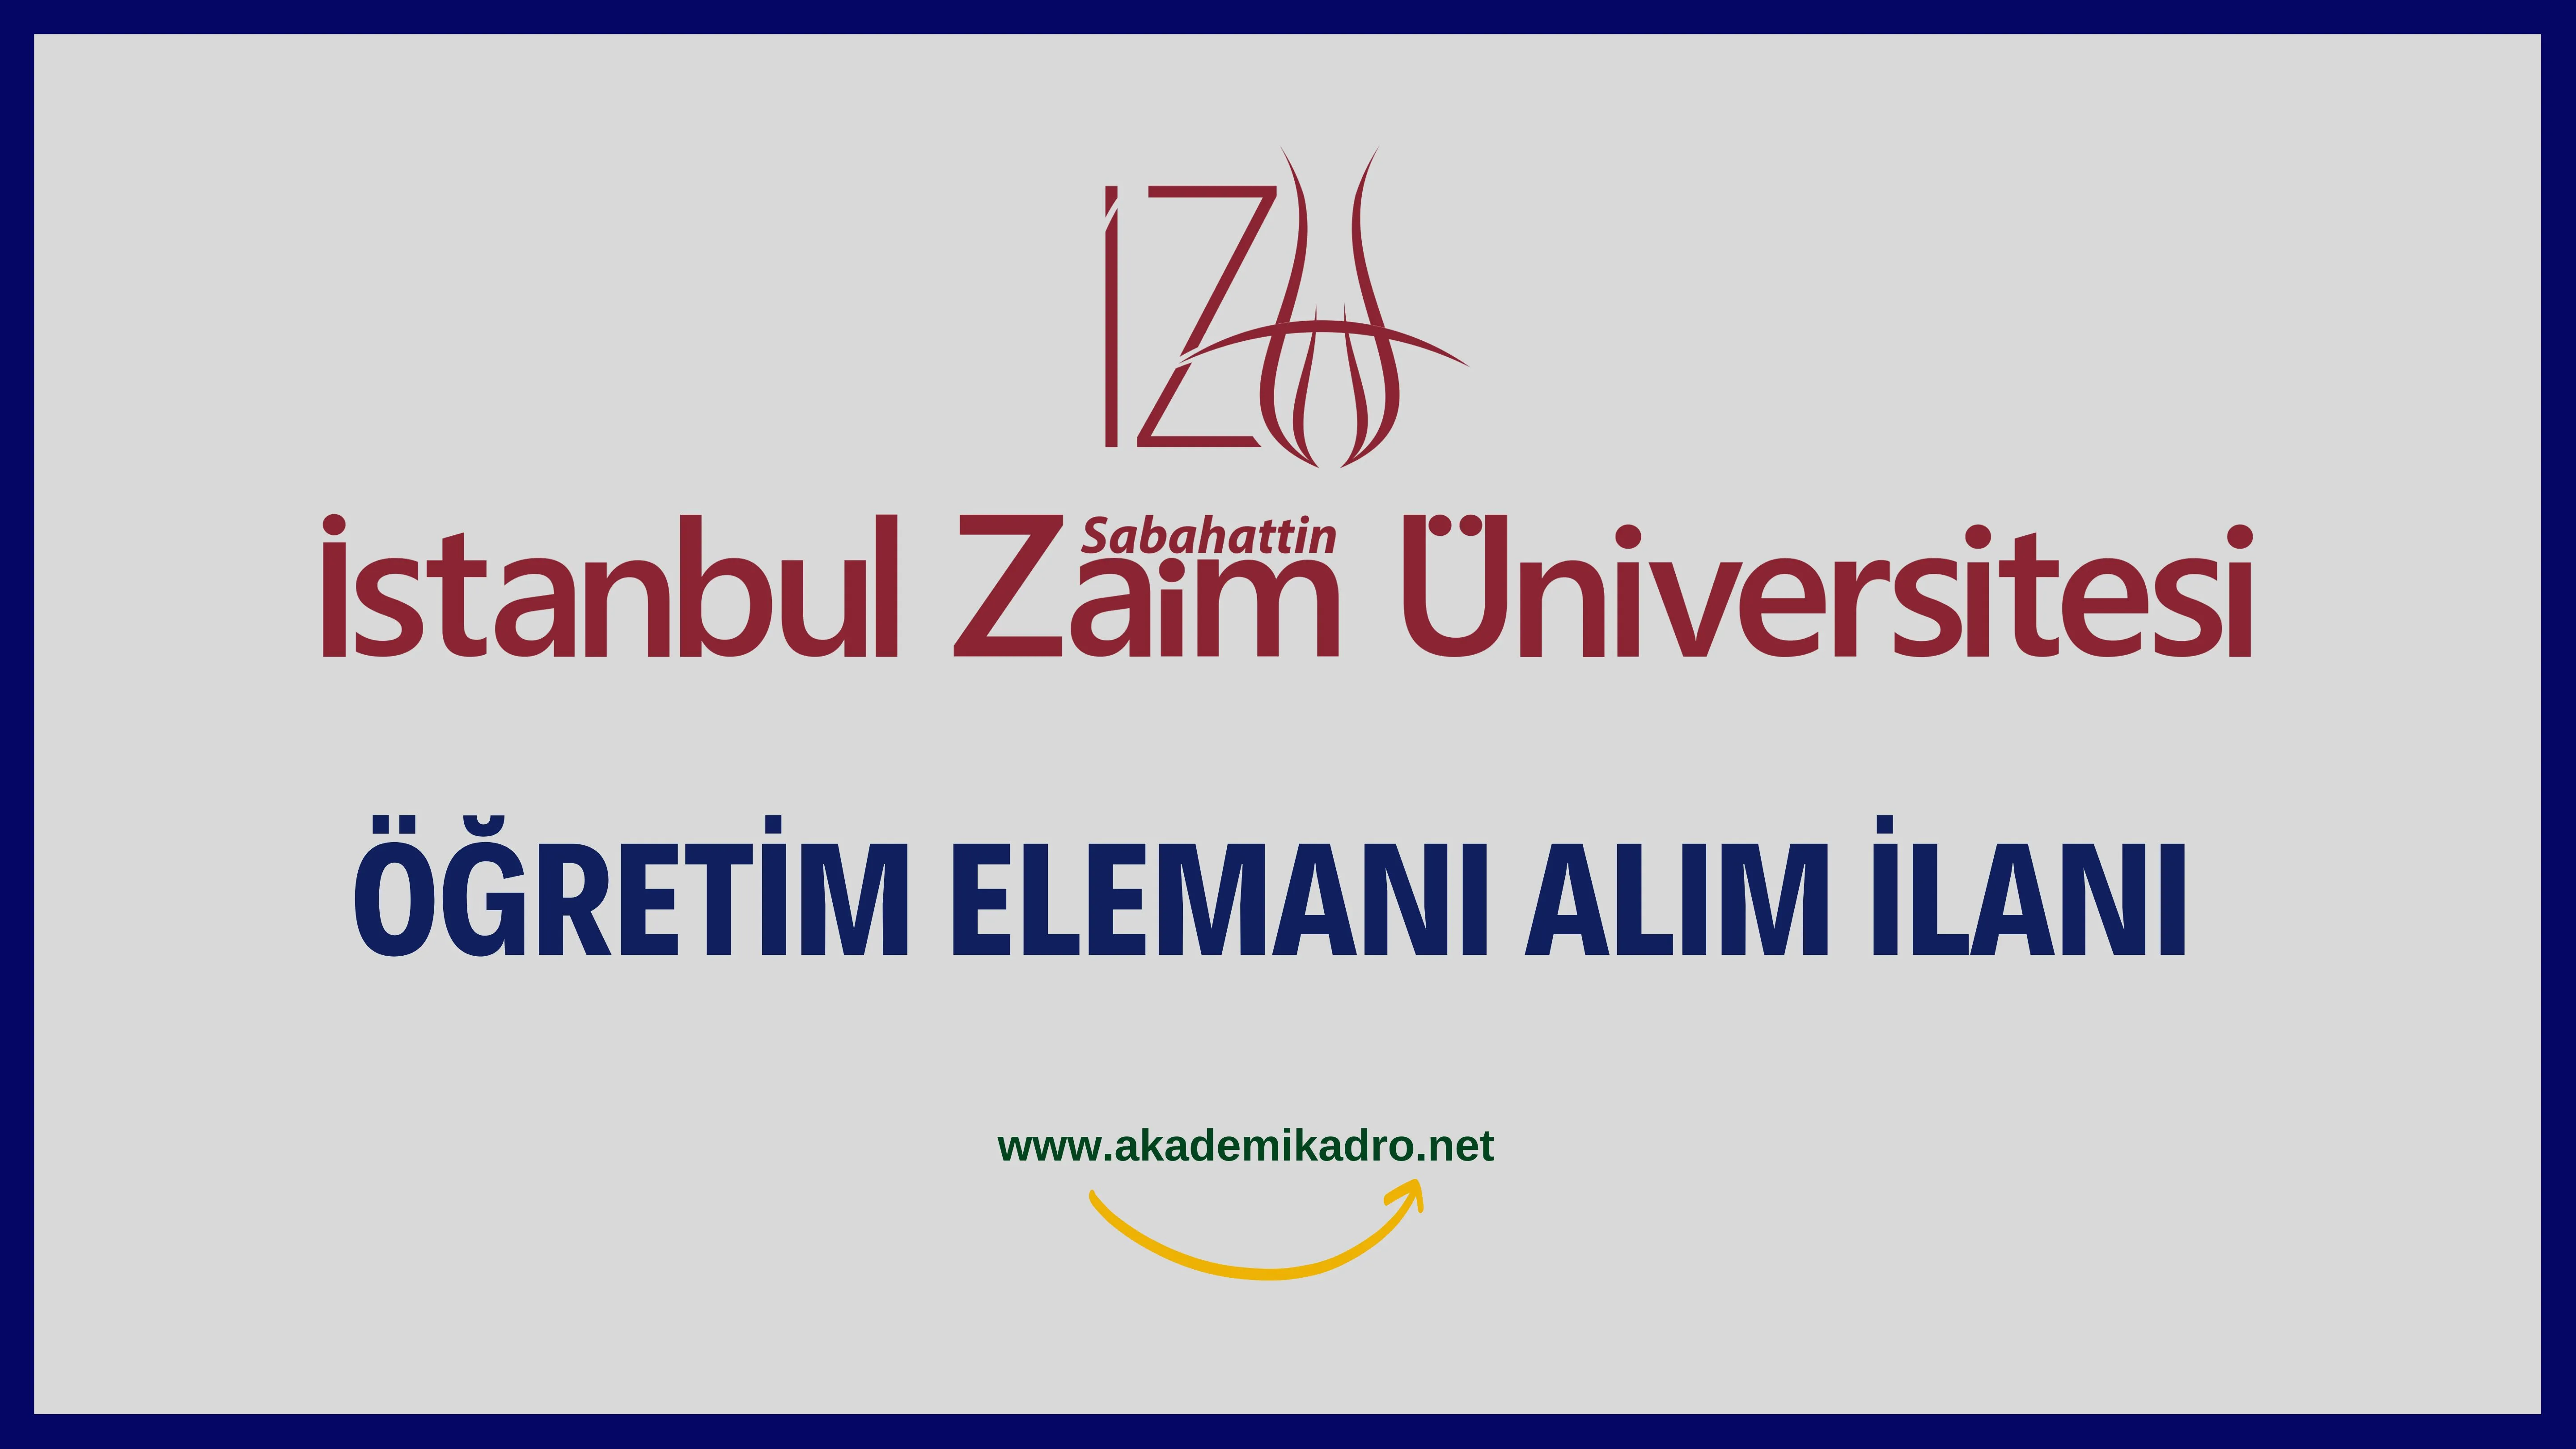 İstanbul Sabahattin Zaim Üniversitesi 13 Araştırma görevlisi ve 25 Öğretim üyesi olmak üzere 38 Öğretim elemanı alacak.